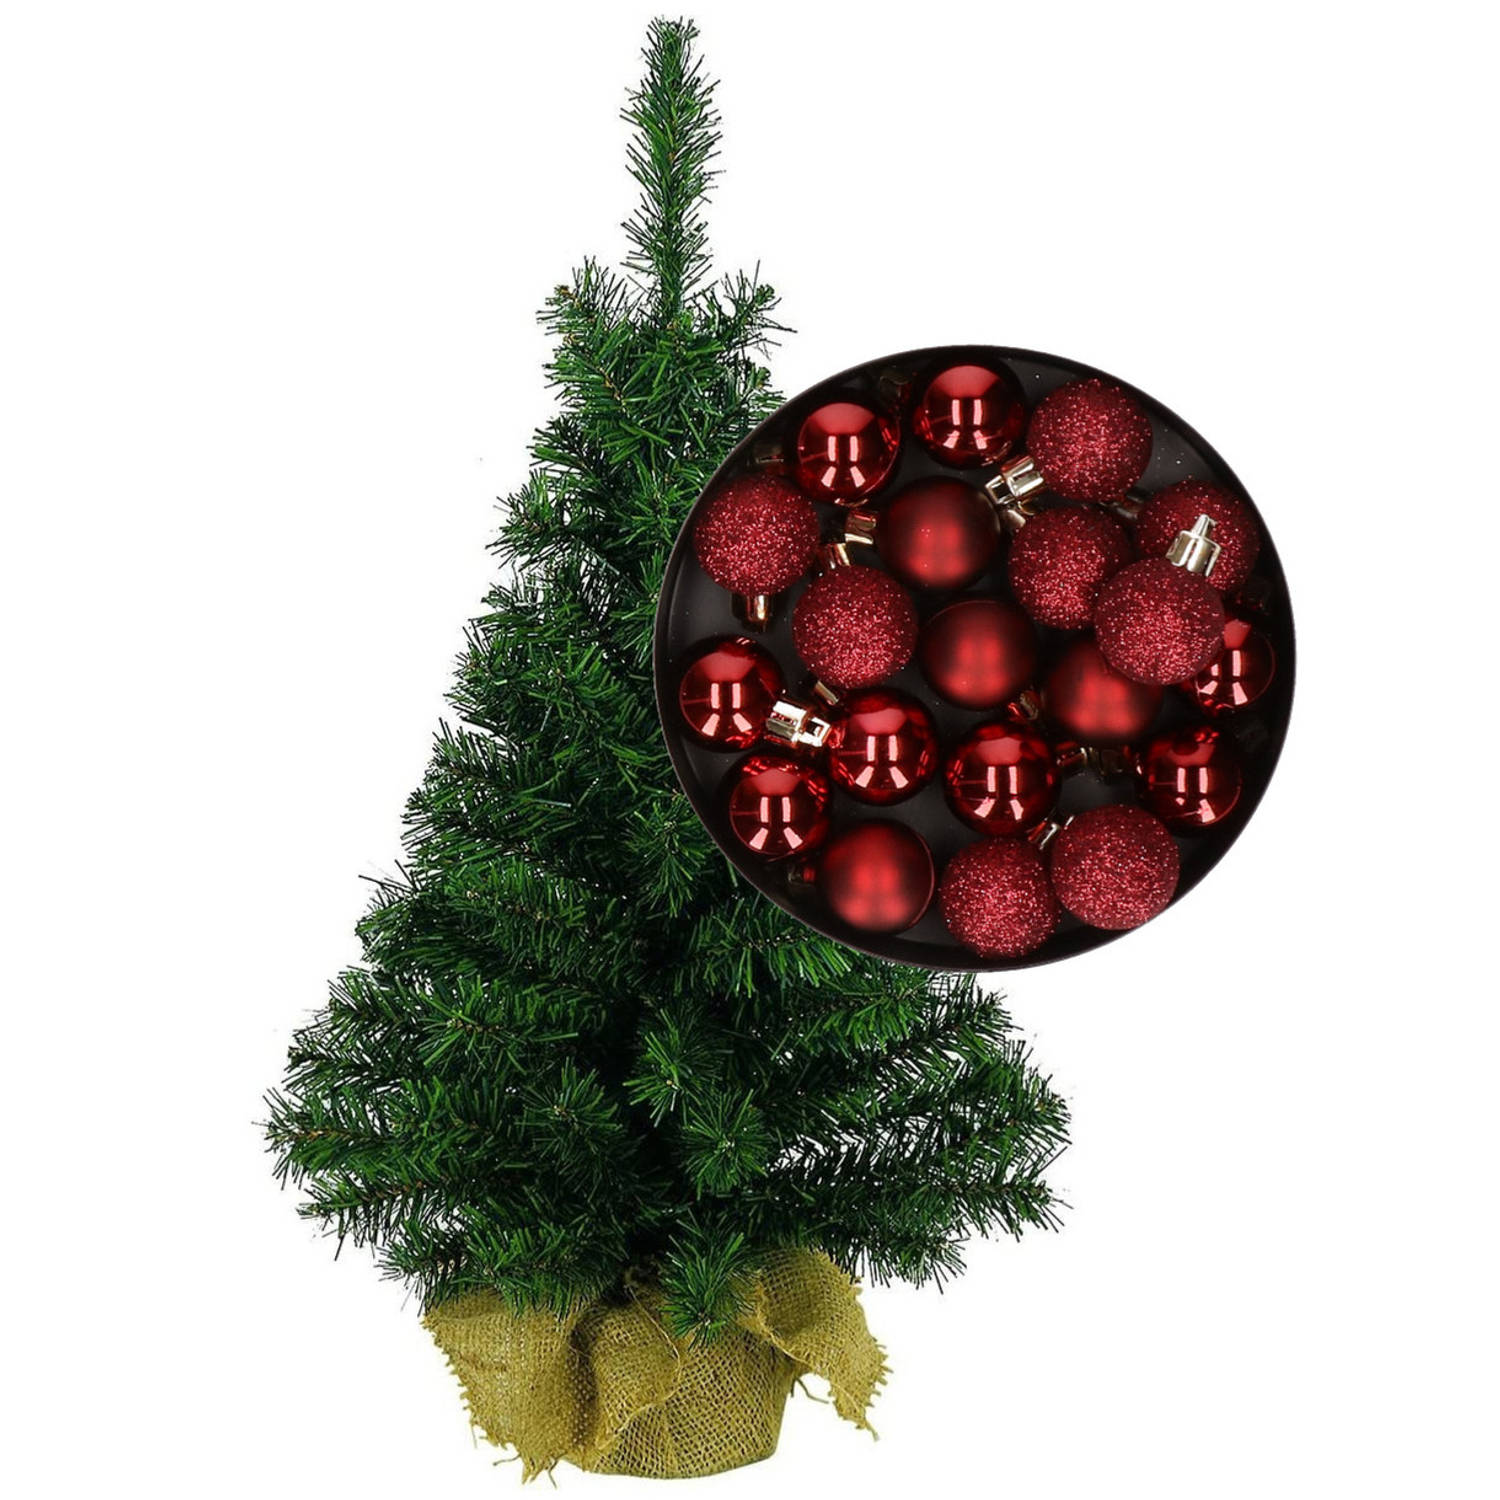 Mini kerstboom-kunst kerstboom H35 cm inclusief kerstballen donkerrood Kunstkerstboom